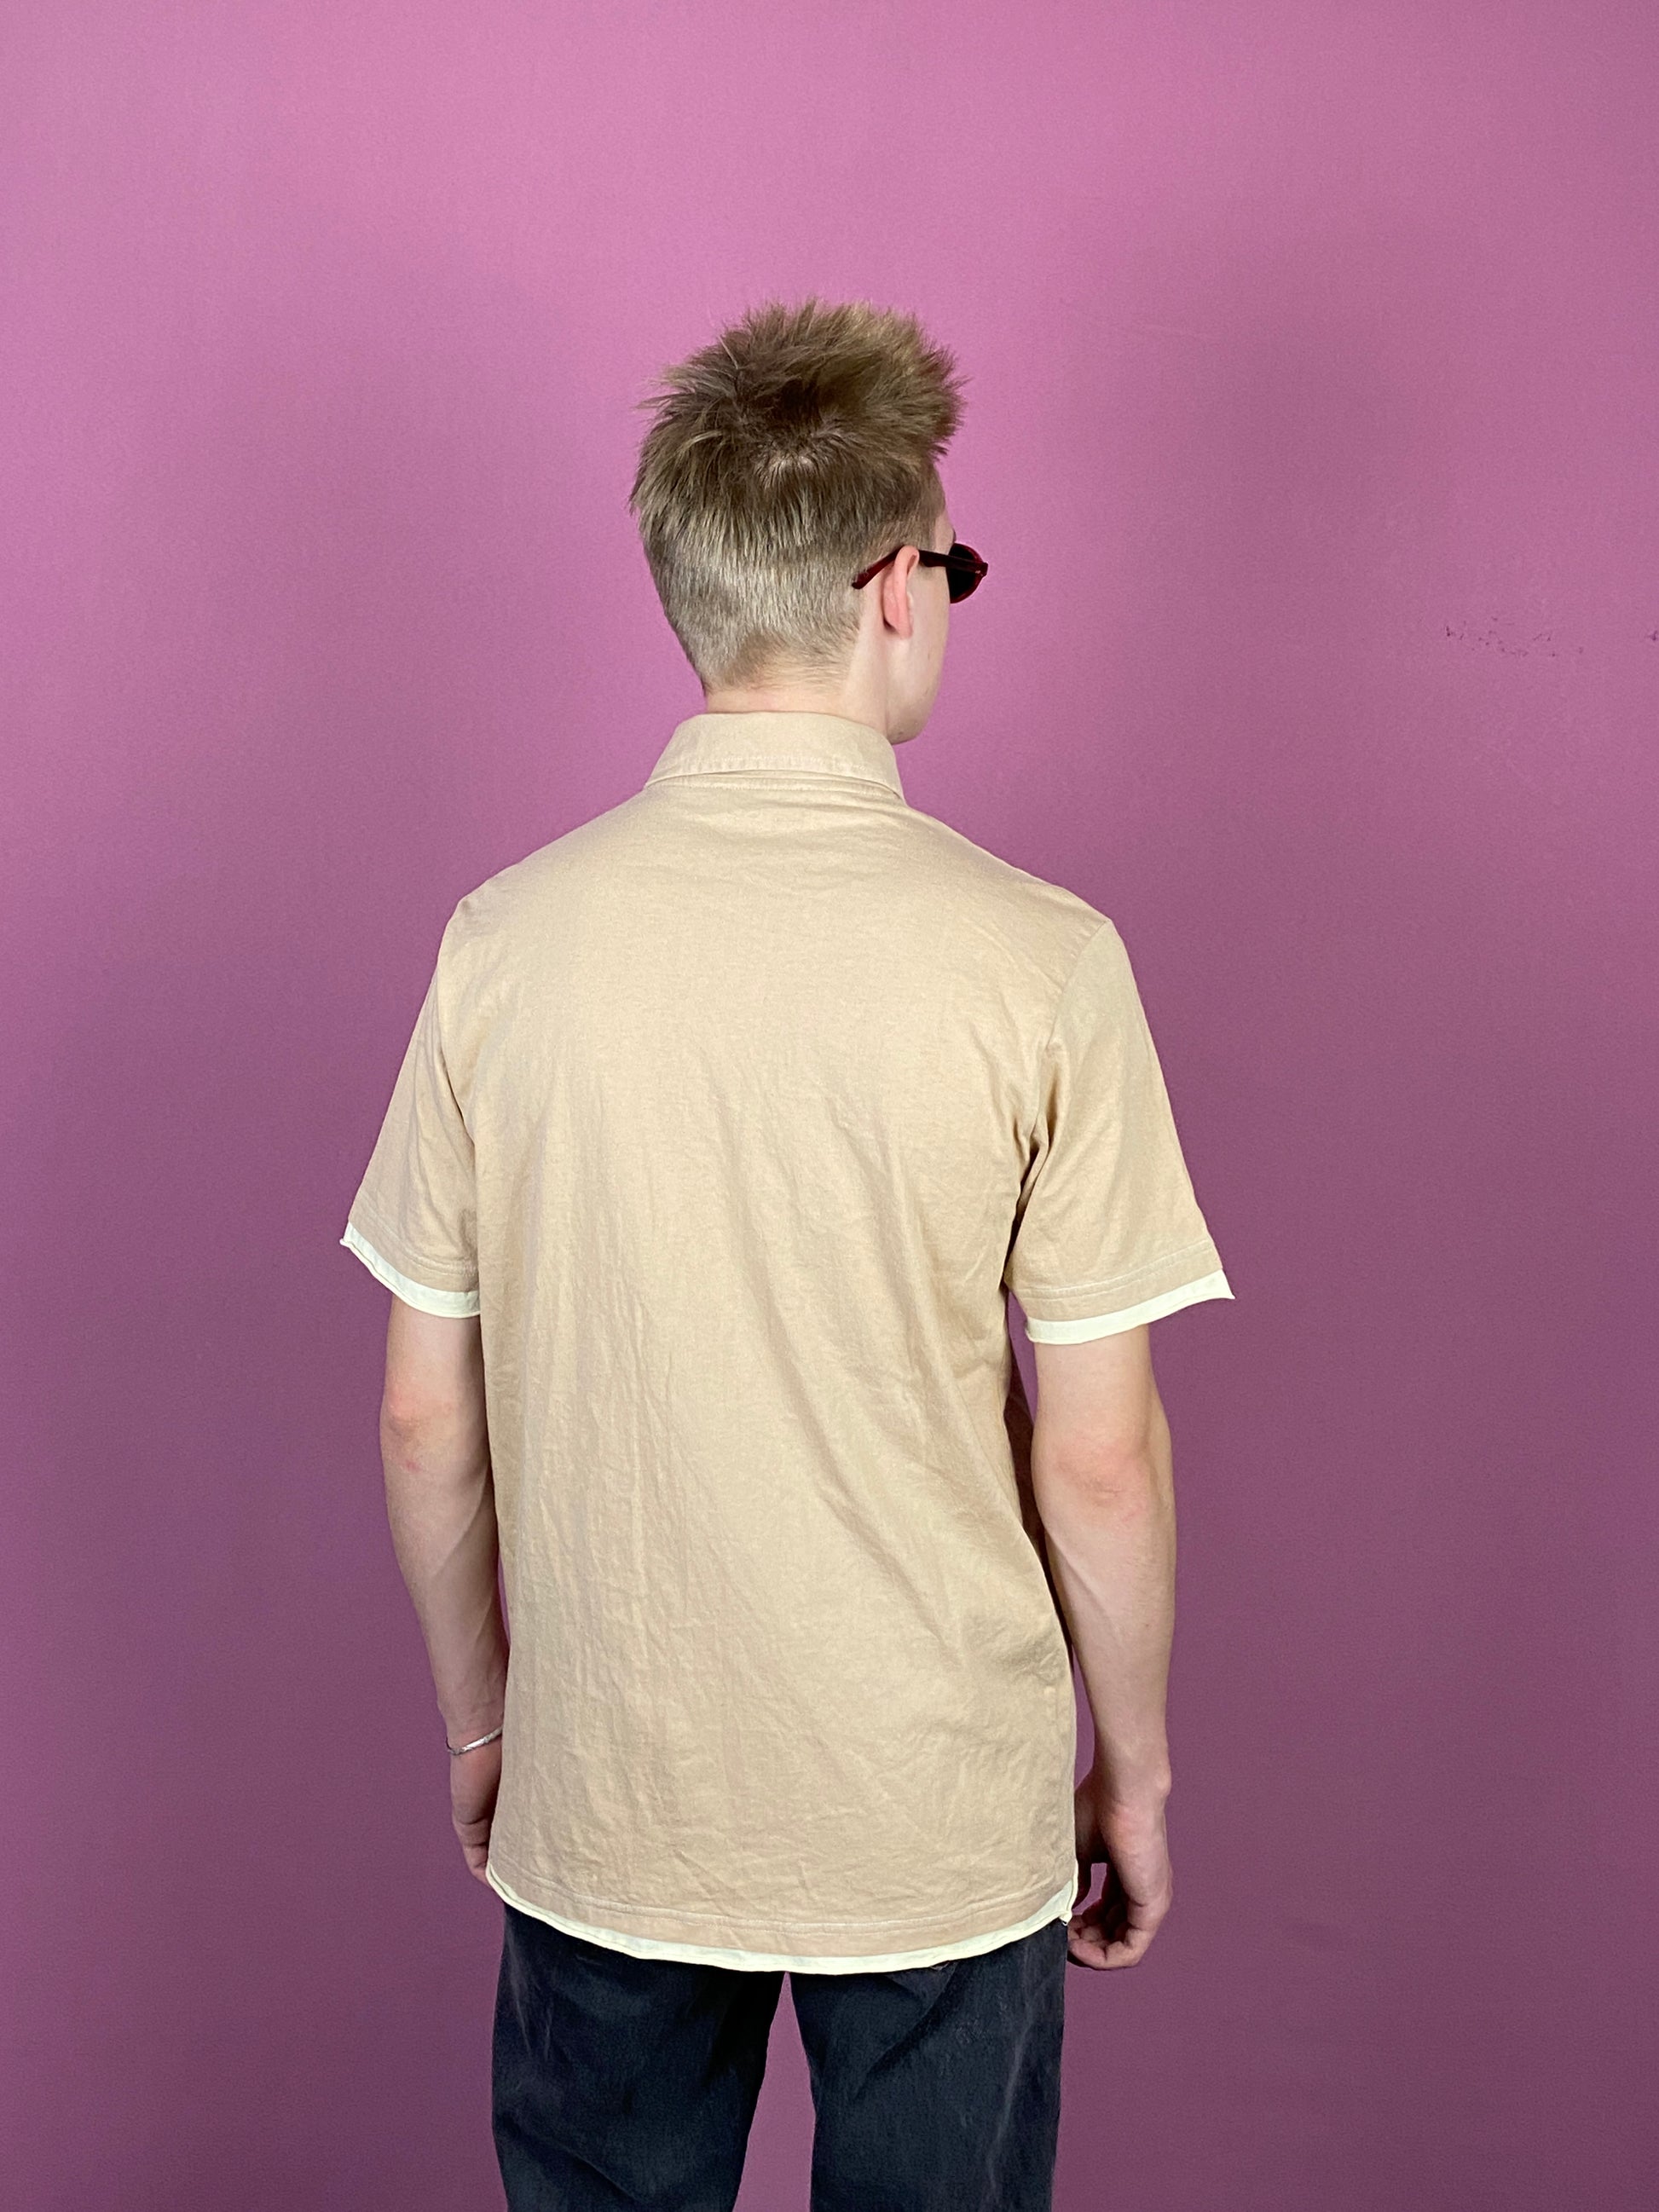 Yves Saint Laurent Vintage Men's Polo Shirt - Medium Beige Cotton